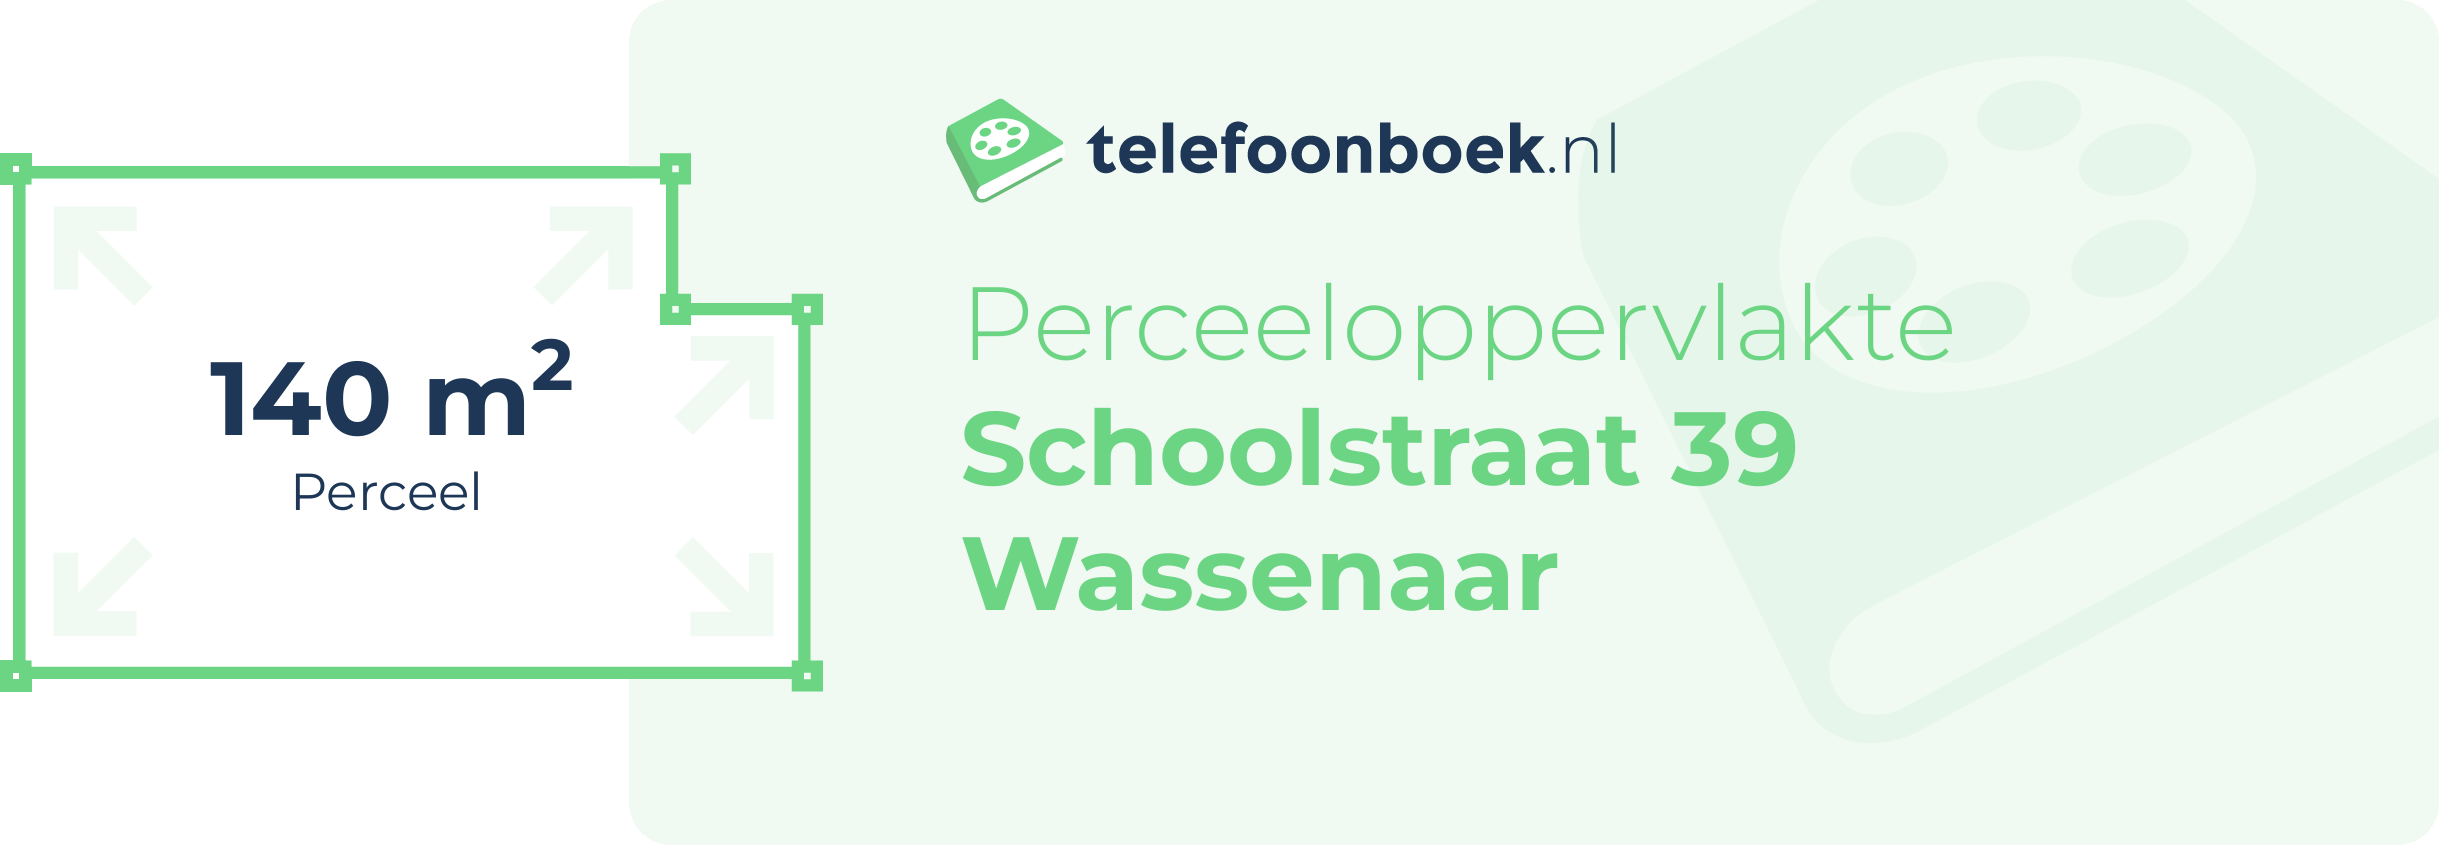 Perceeloppervlakte Schoolstraat 39 Wassenaar